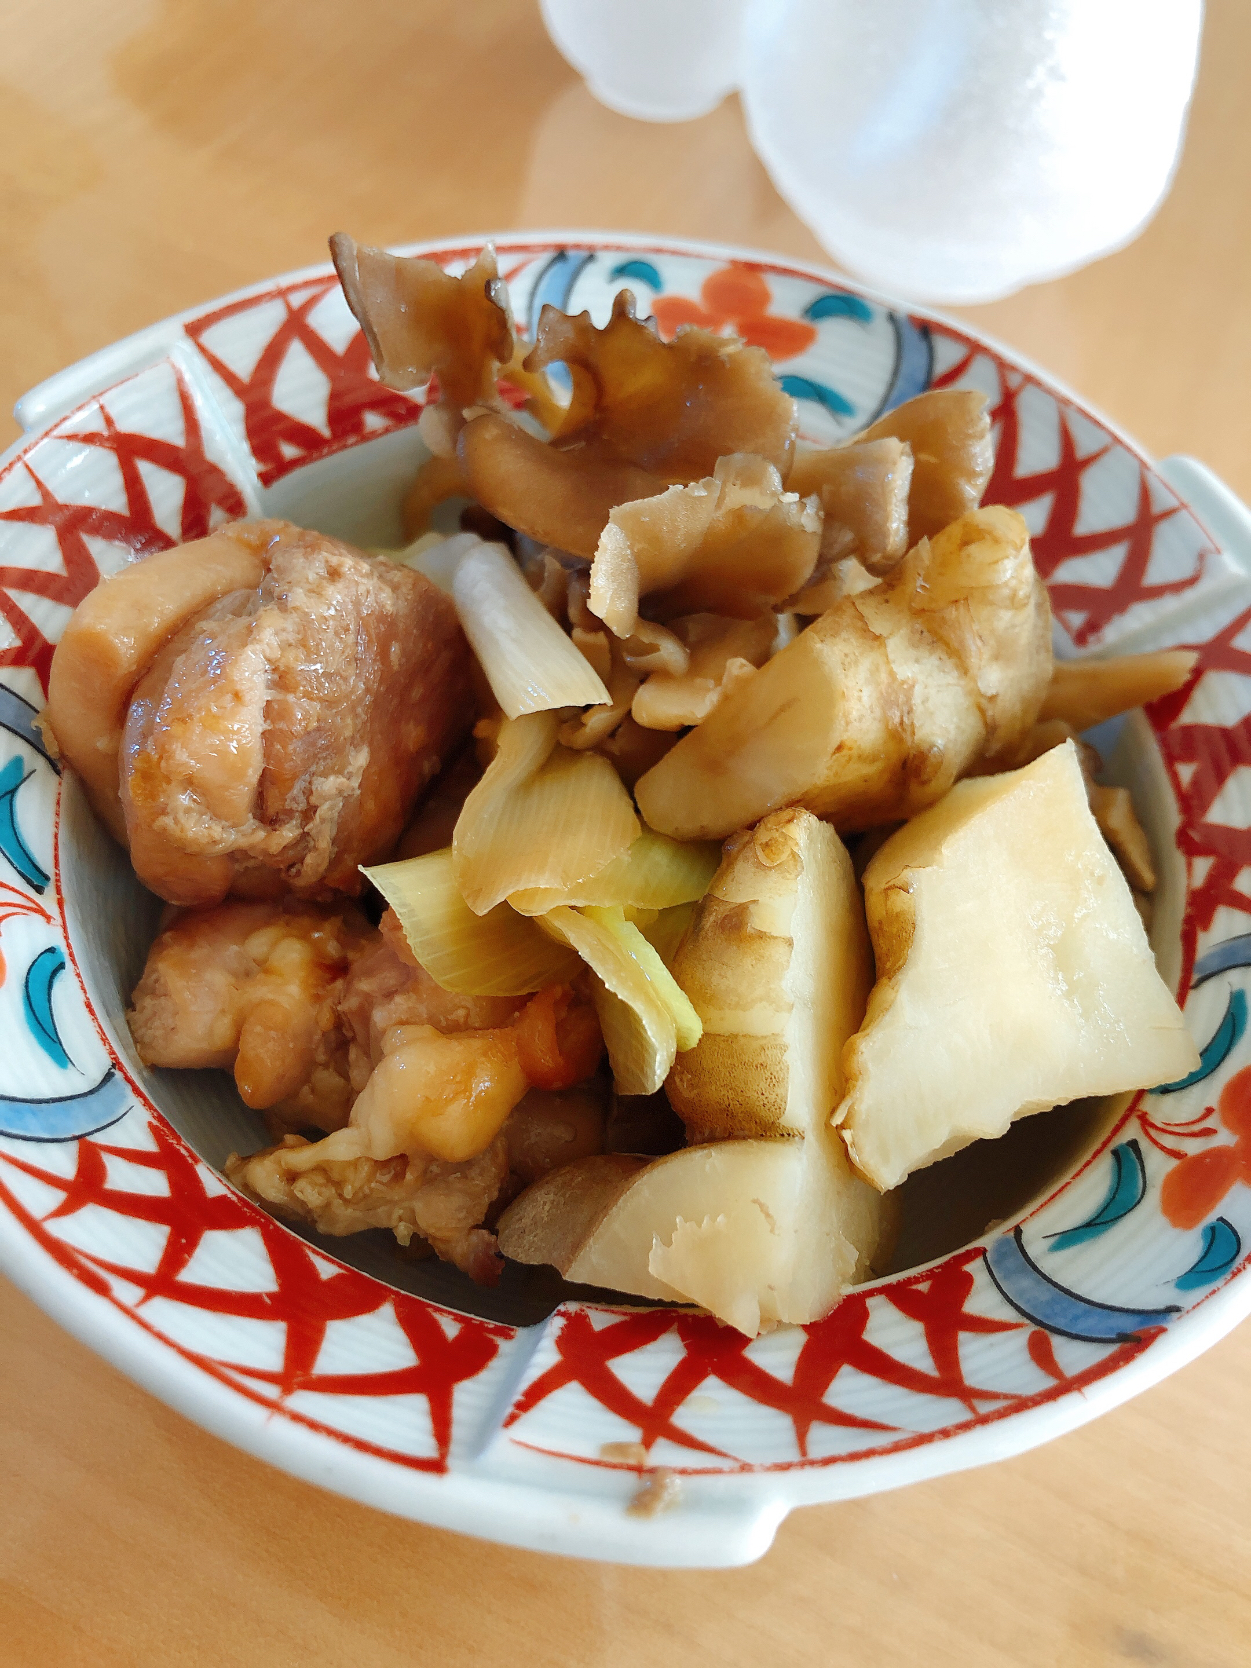 菊芋の煮物